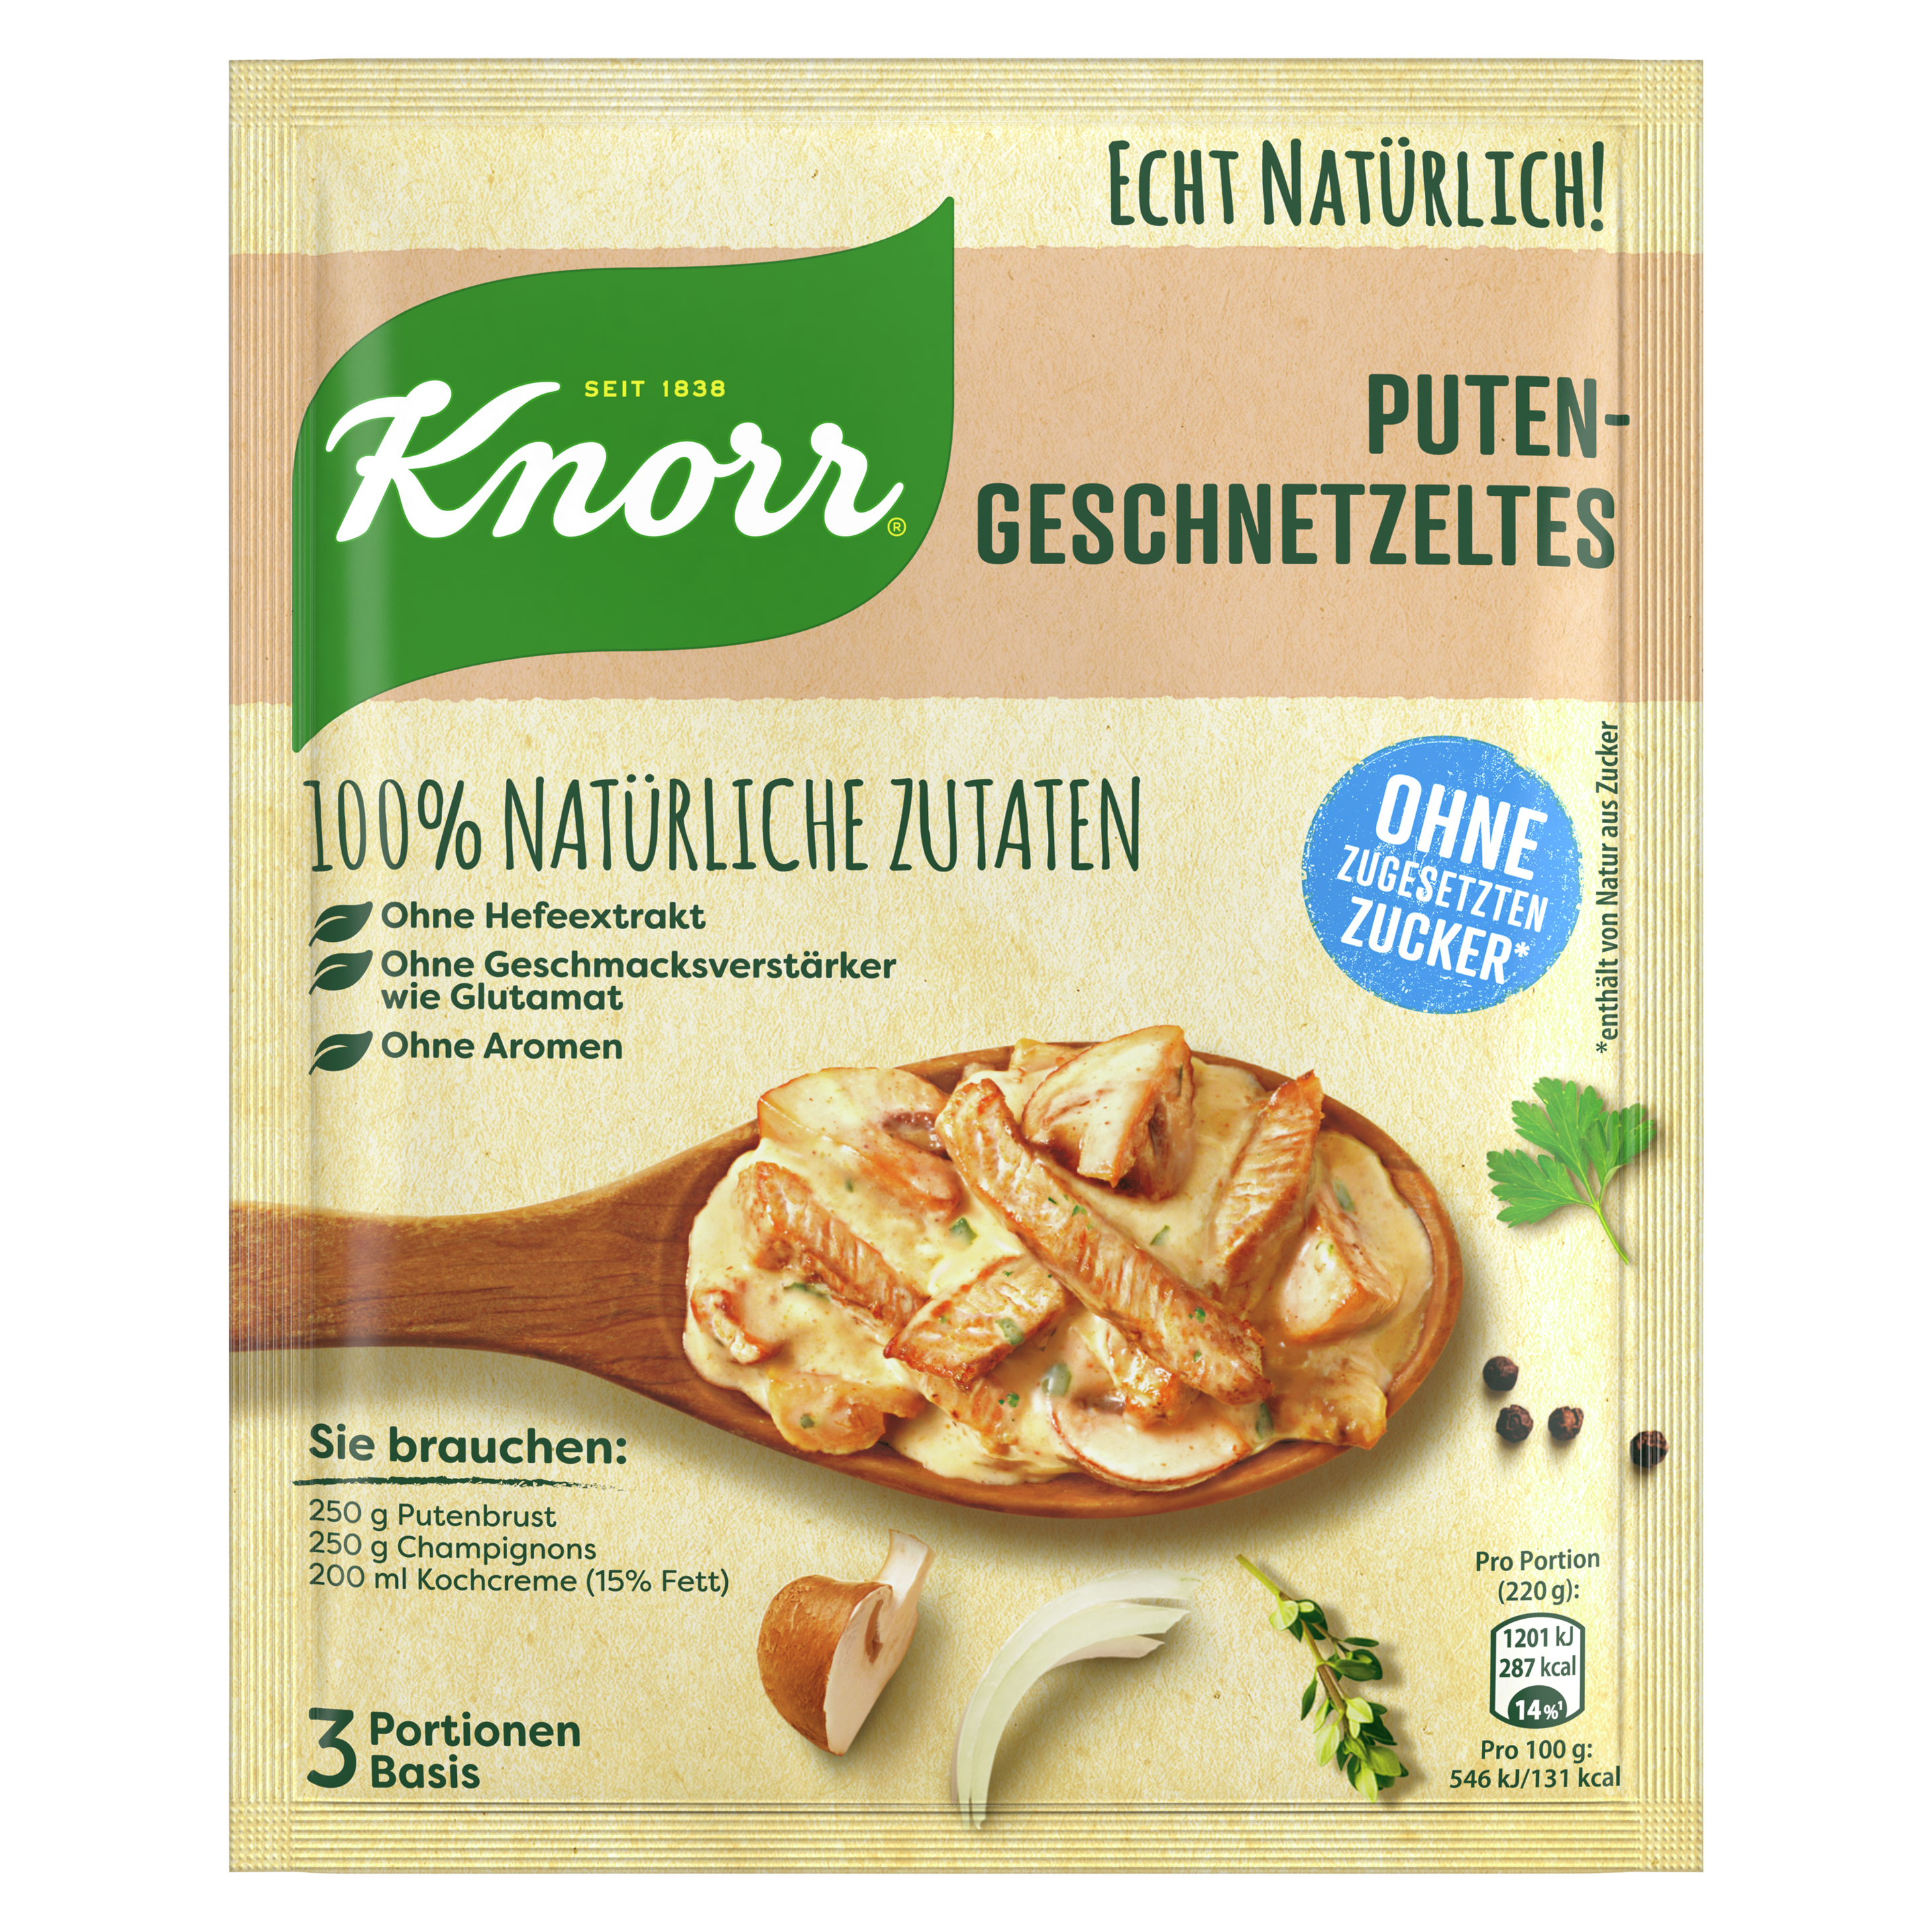 Knorr Echt Natürlich Putengeschnetzeltes 3 Portionen